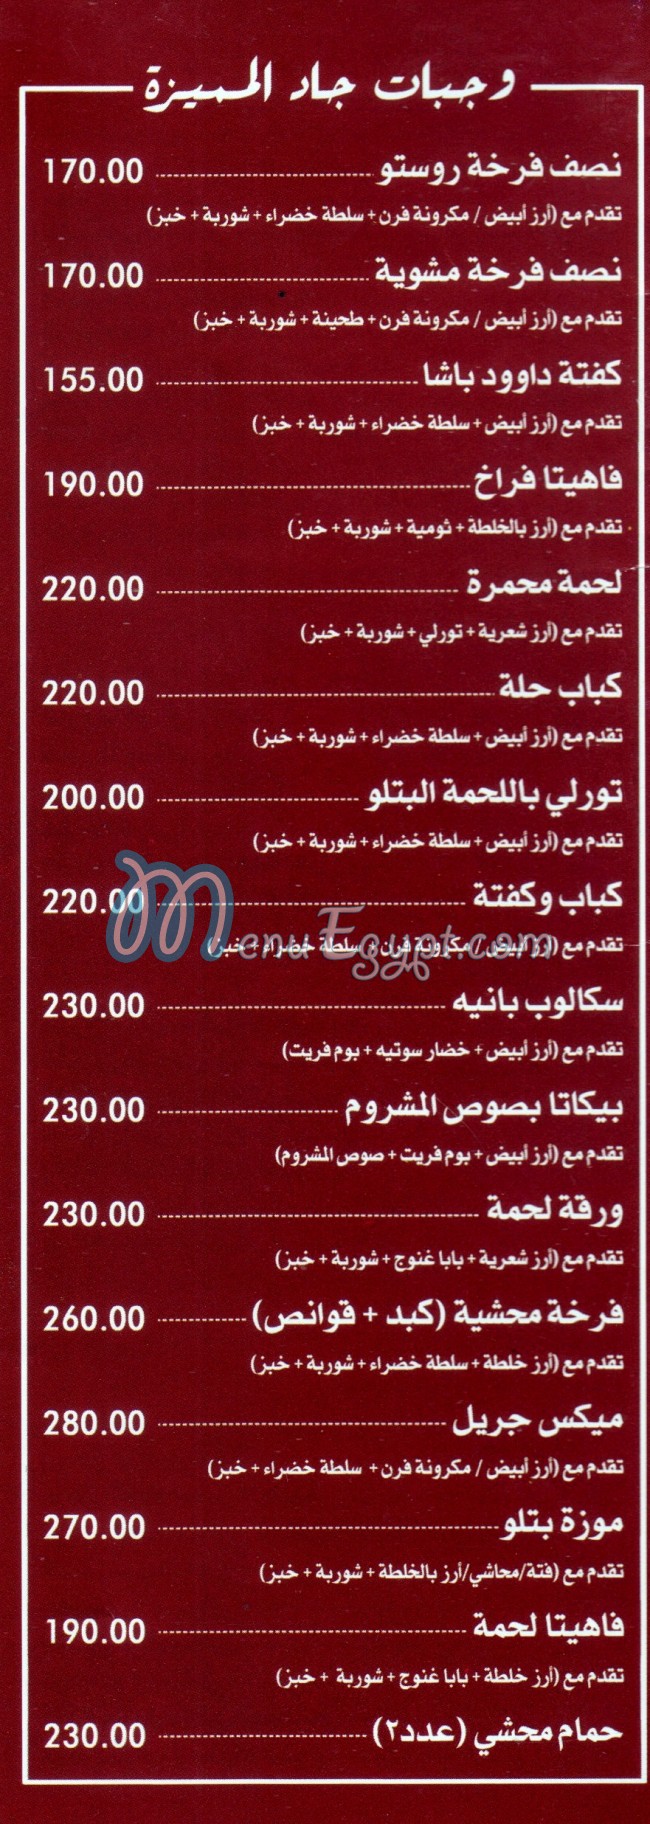 Gad Sharm El Shaikh online menu